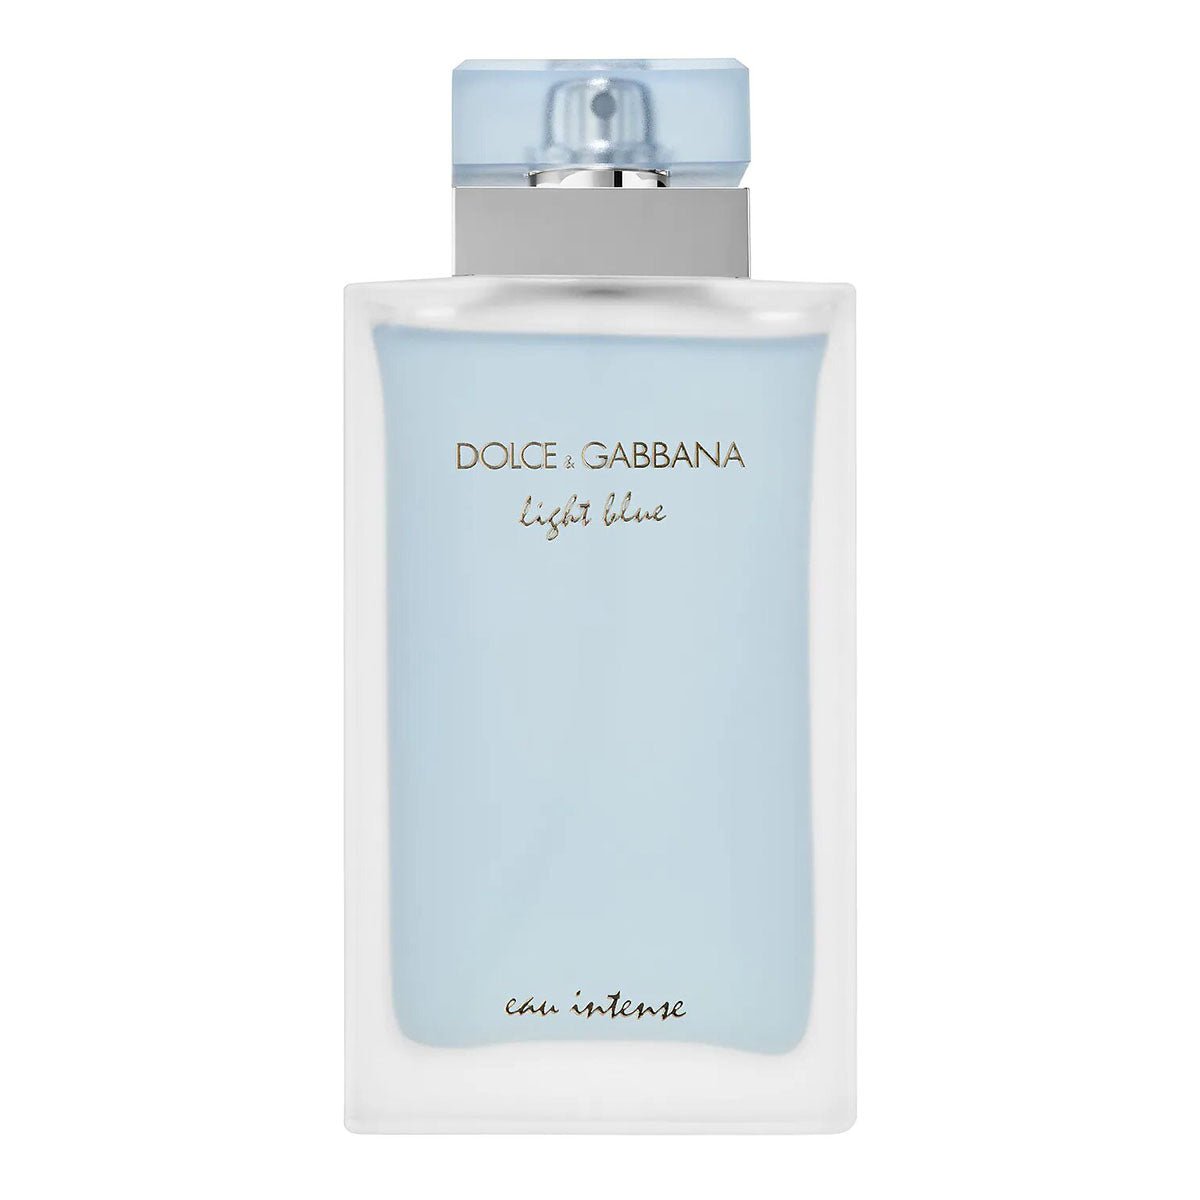 Dolce & Gabbana Light Blue Eau Intense For Women Edp 100 ml-Perfume - AllurebeautypkDolce & Gabbana Light Blue Eau Intense For Women Edp 100 ml-Perfume